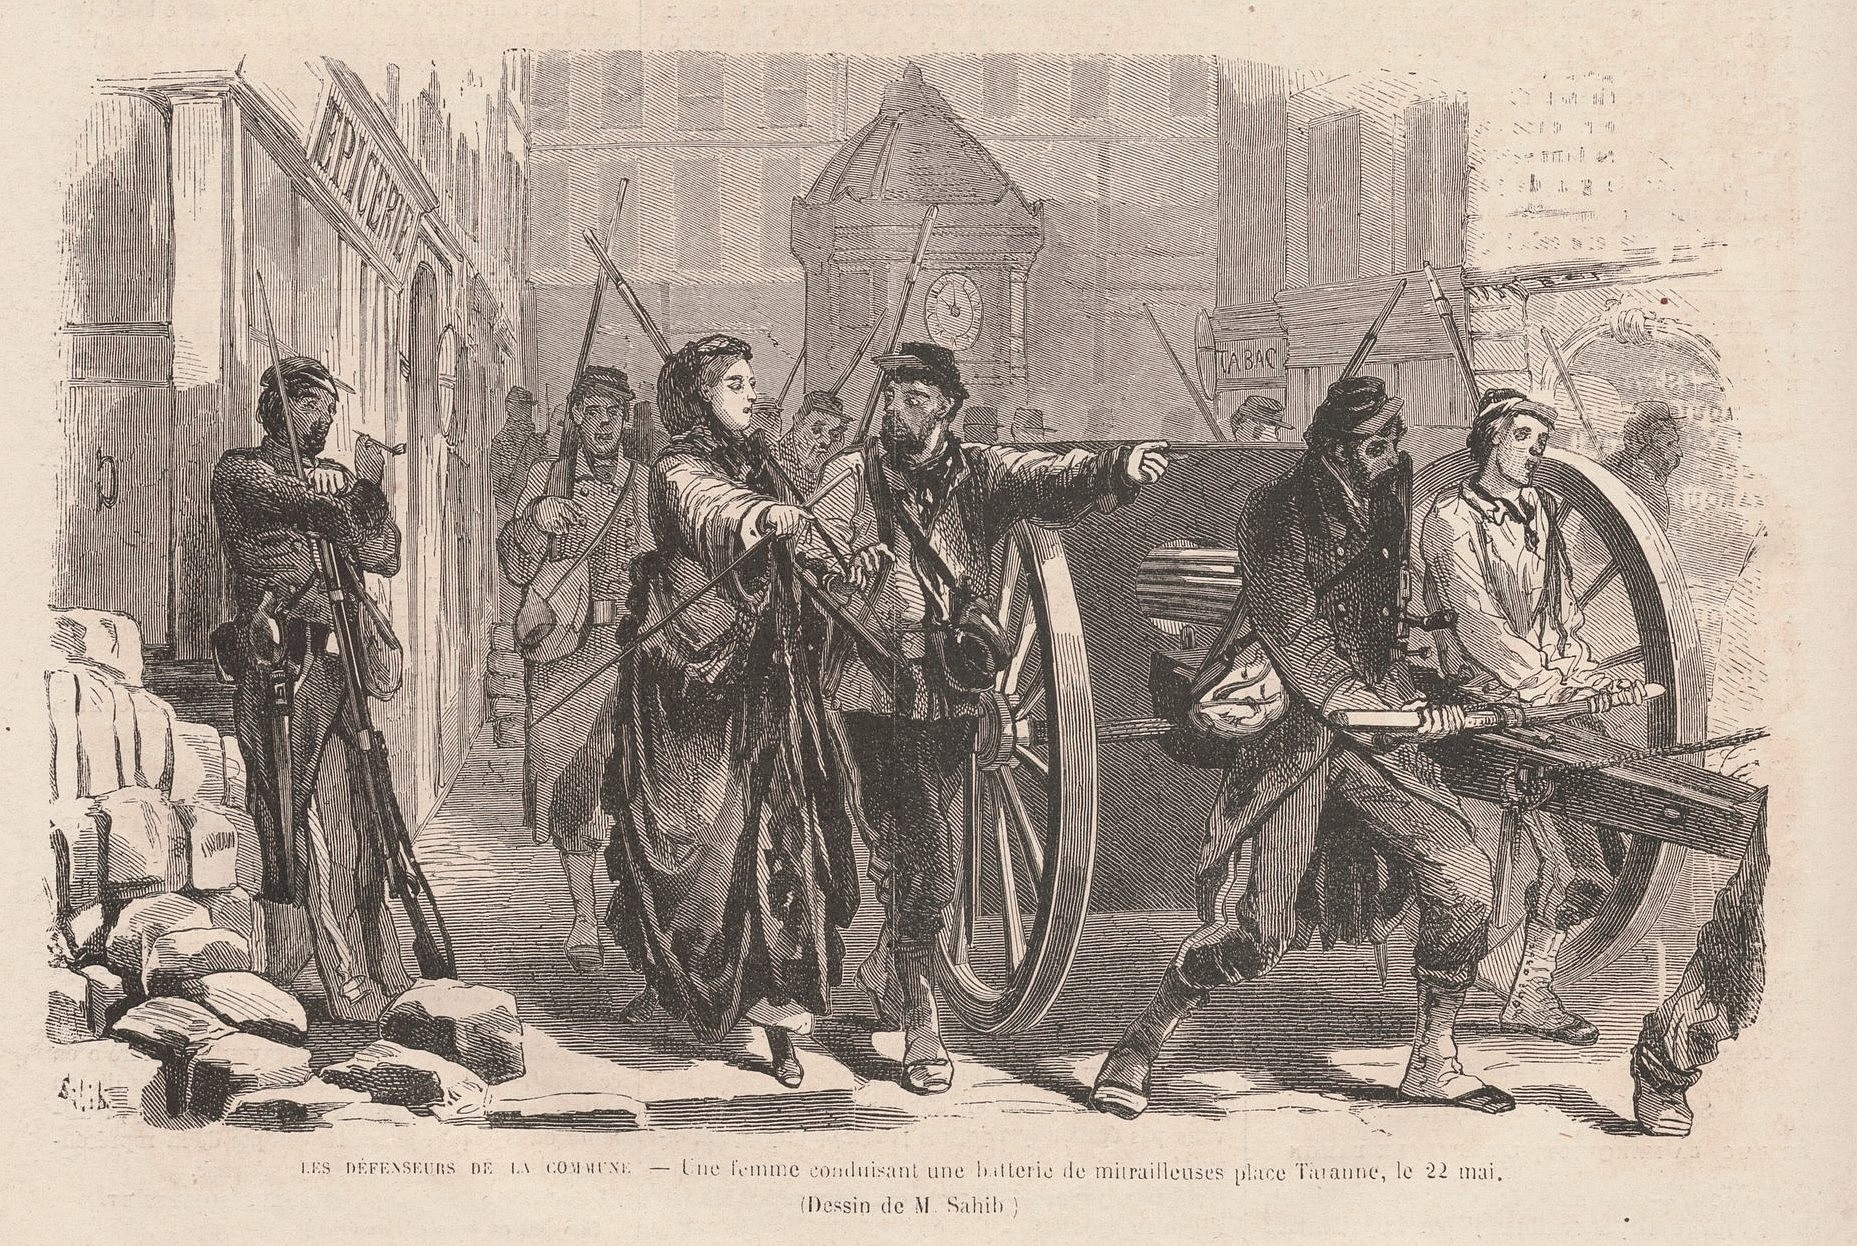 22 mai 1871 - Femme conduisant une mitrailleuse place Turenne - Dessin de Sahib (Le Monde Illustré du 17 juin 1871)